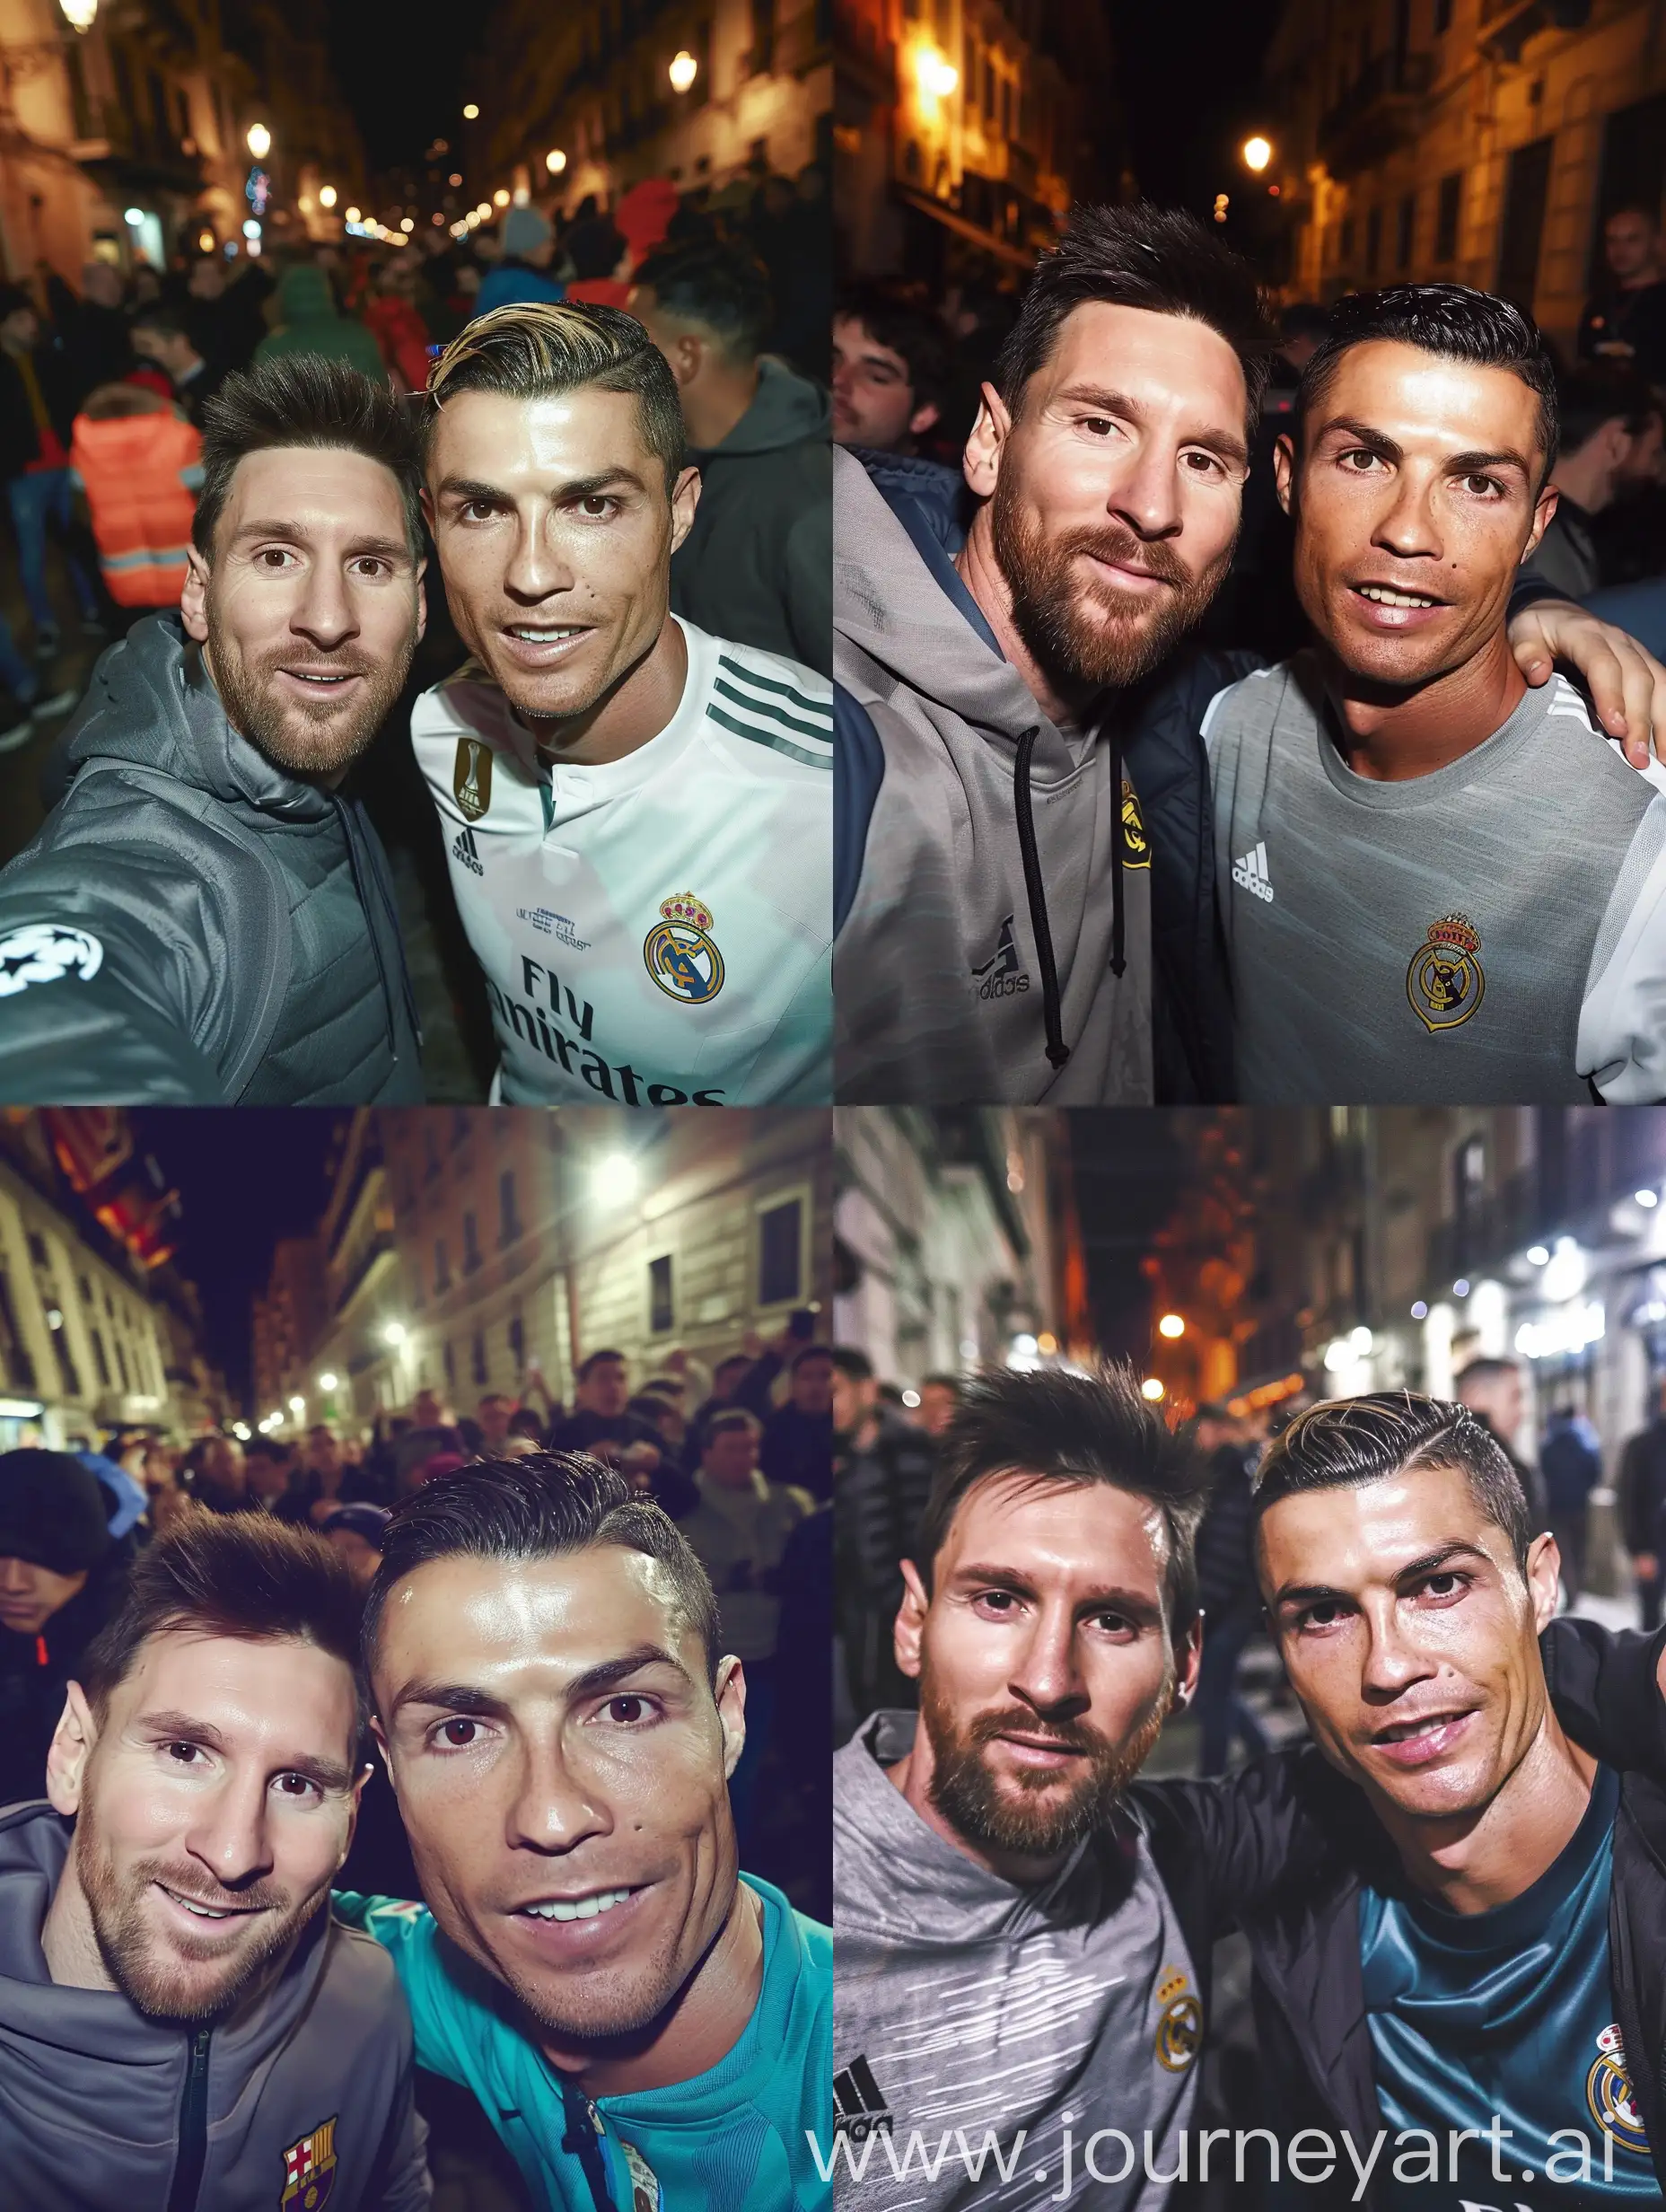 Lionel-Messi-and-Cristiano-Ronaldo-Night-Encounter-in-Urban-Setting